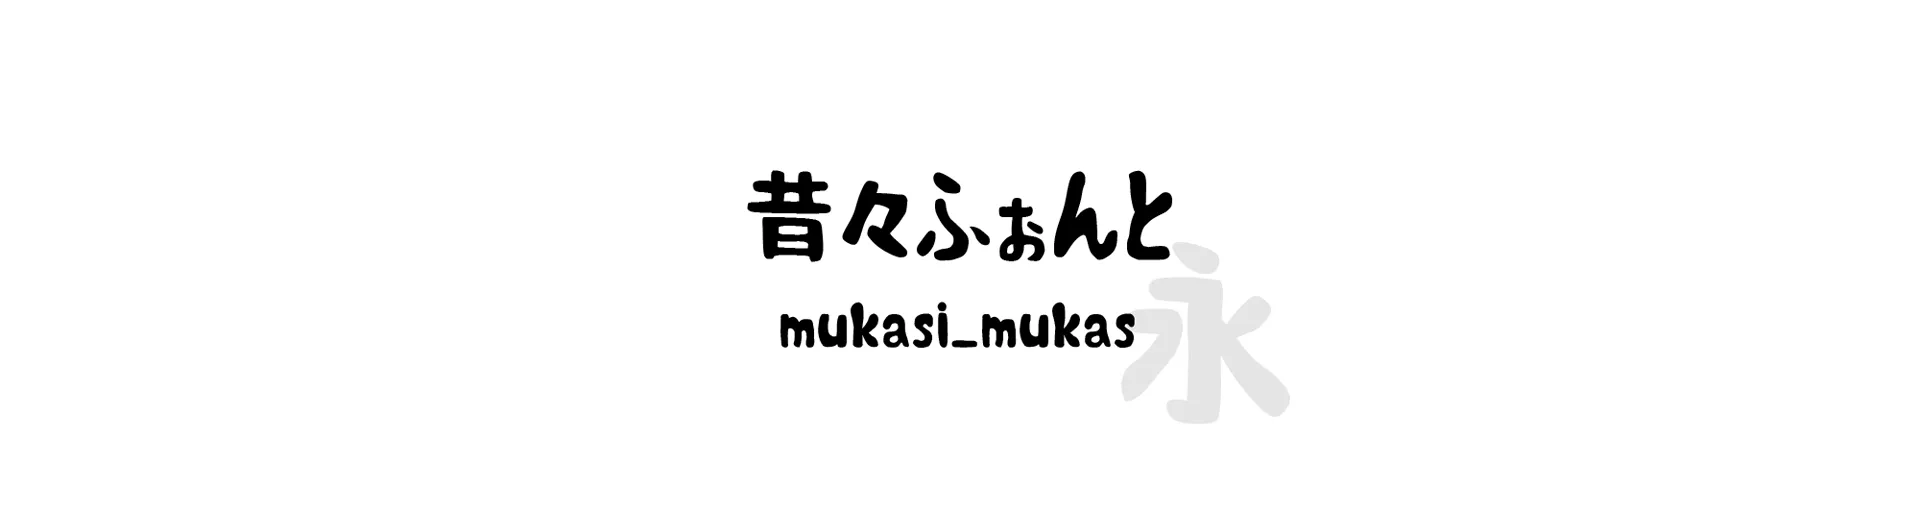 mukasi_mukas